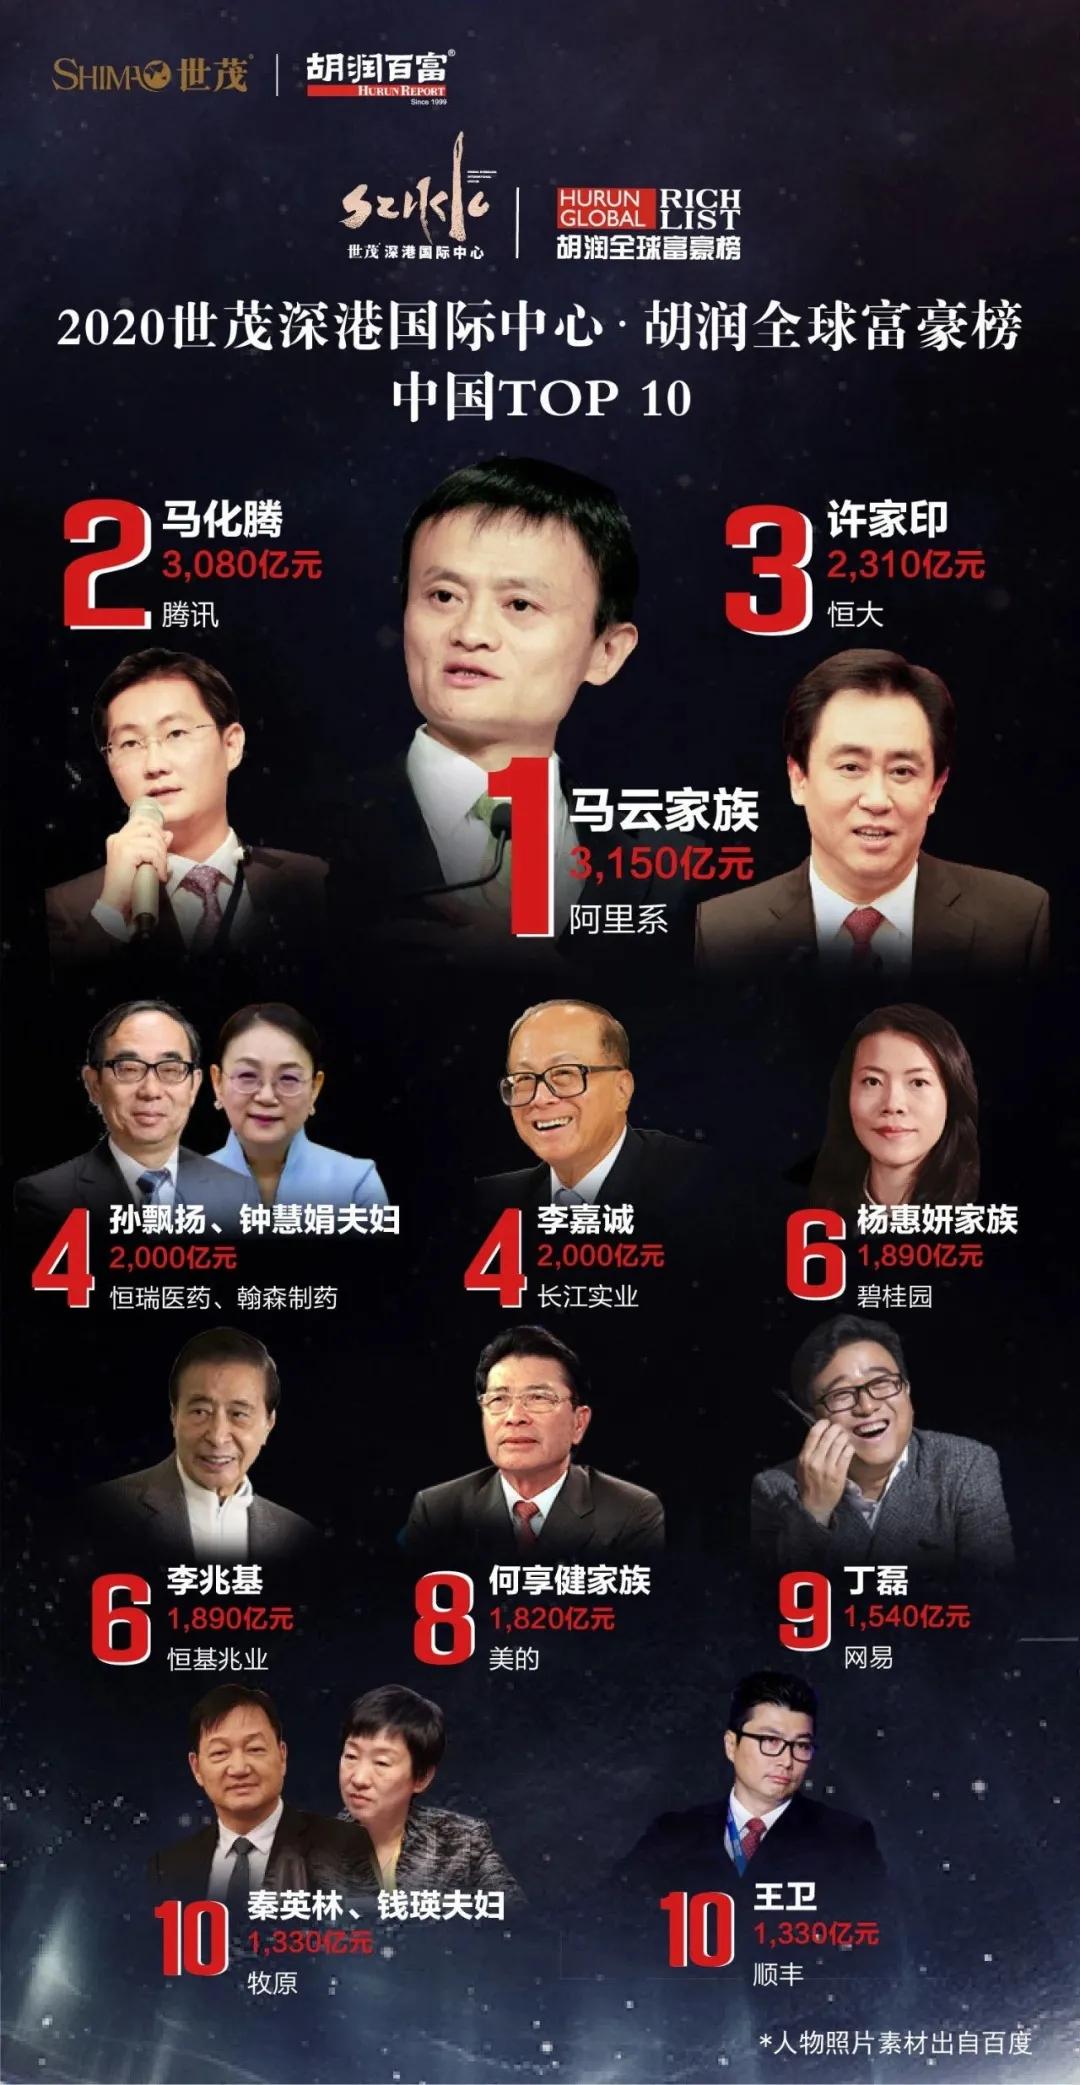 中国富豪榜中,马云家族以3150亿元领先,再次登顶中国首富,其财富增长